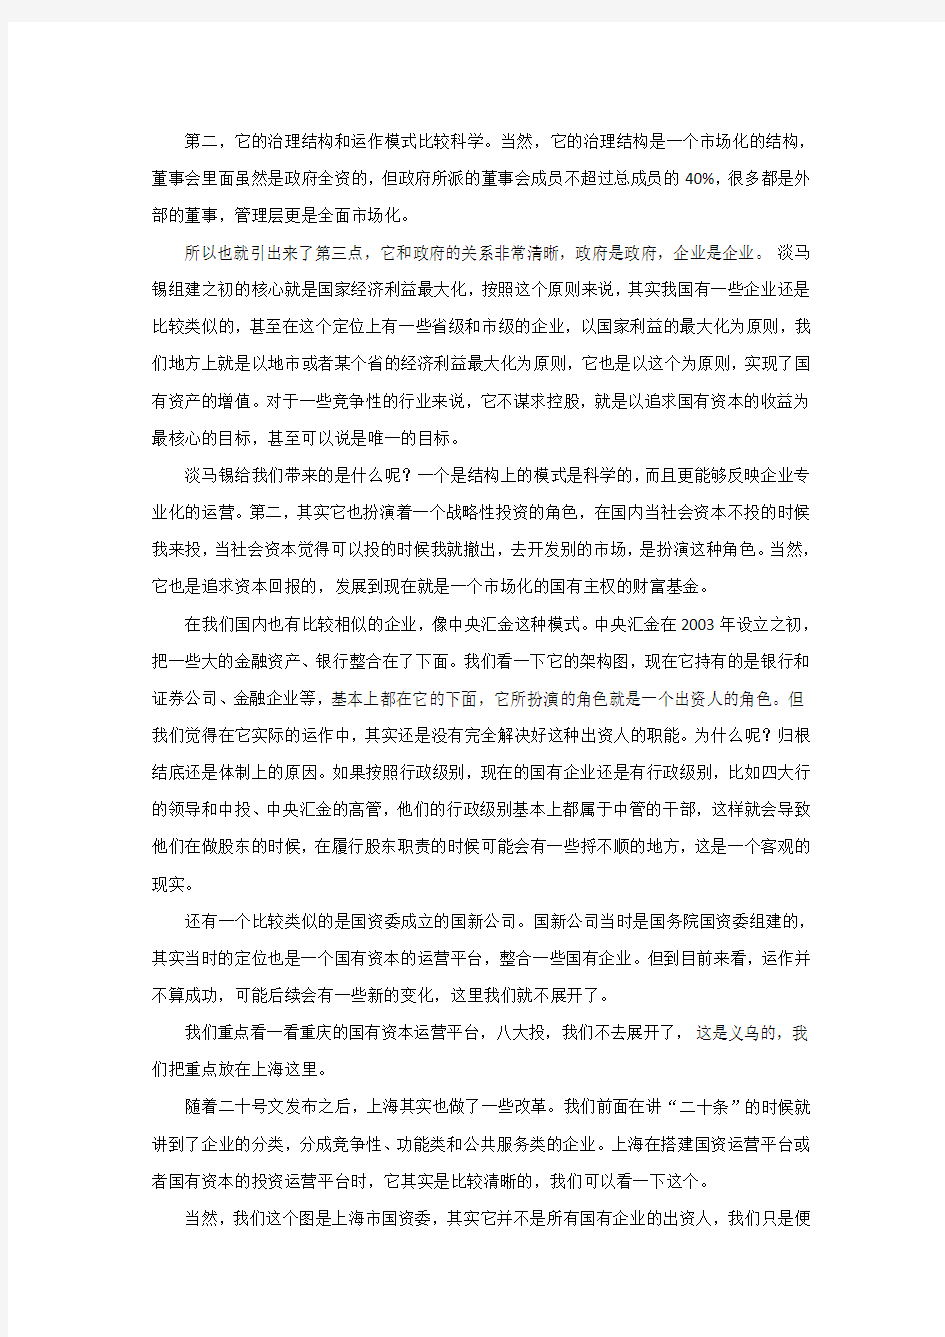 上海国资改革文件解读与案例分析(下)